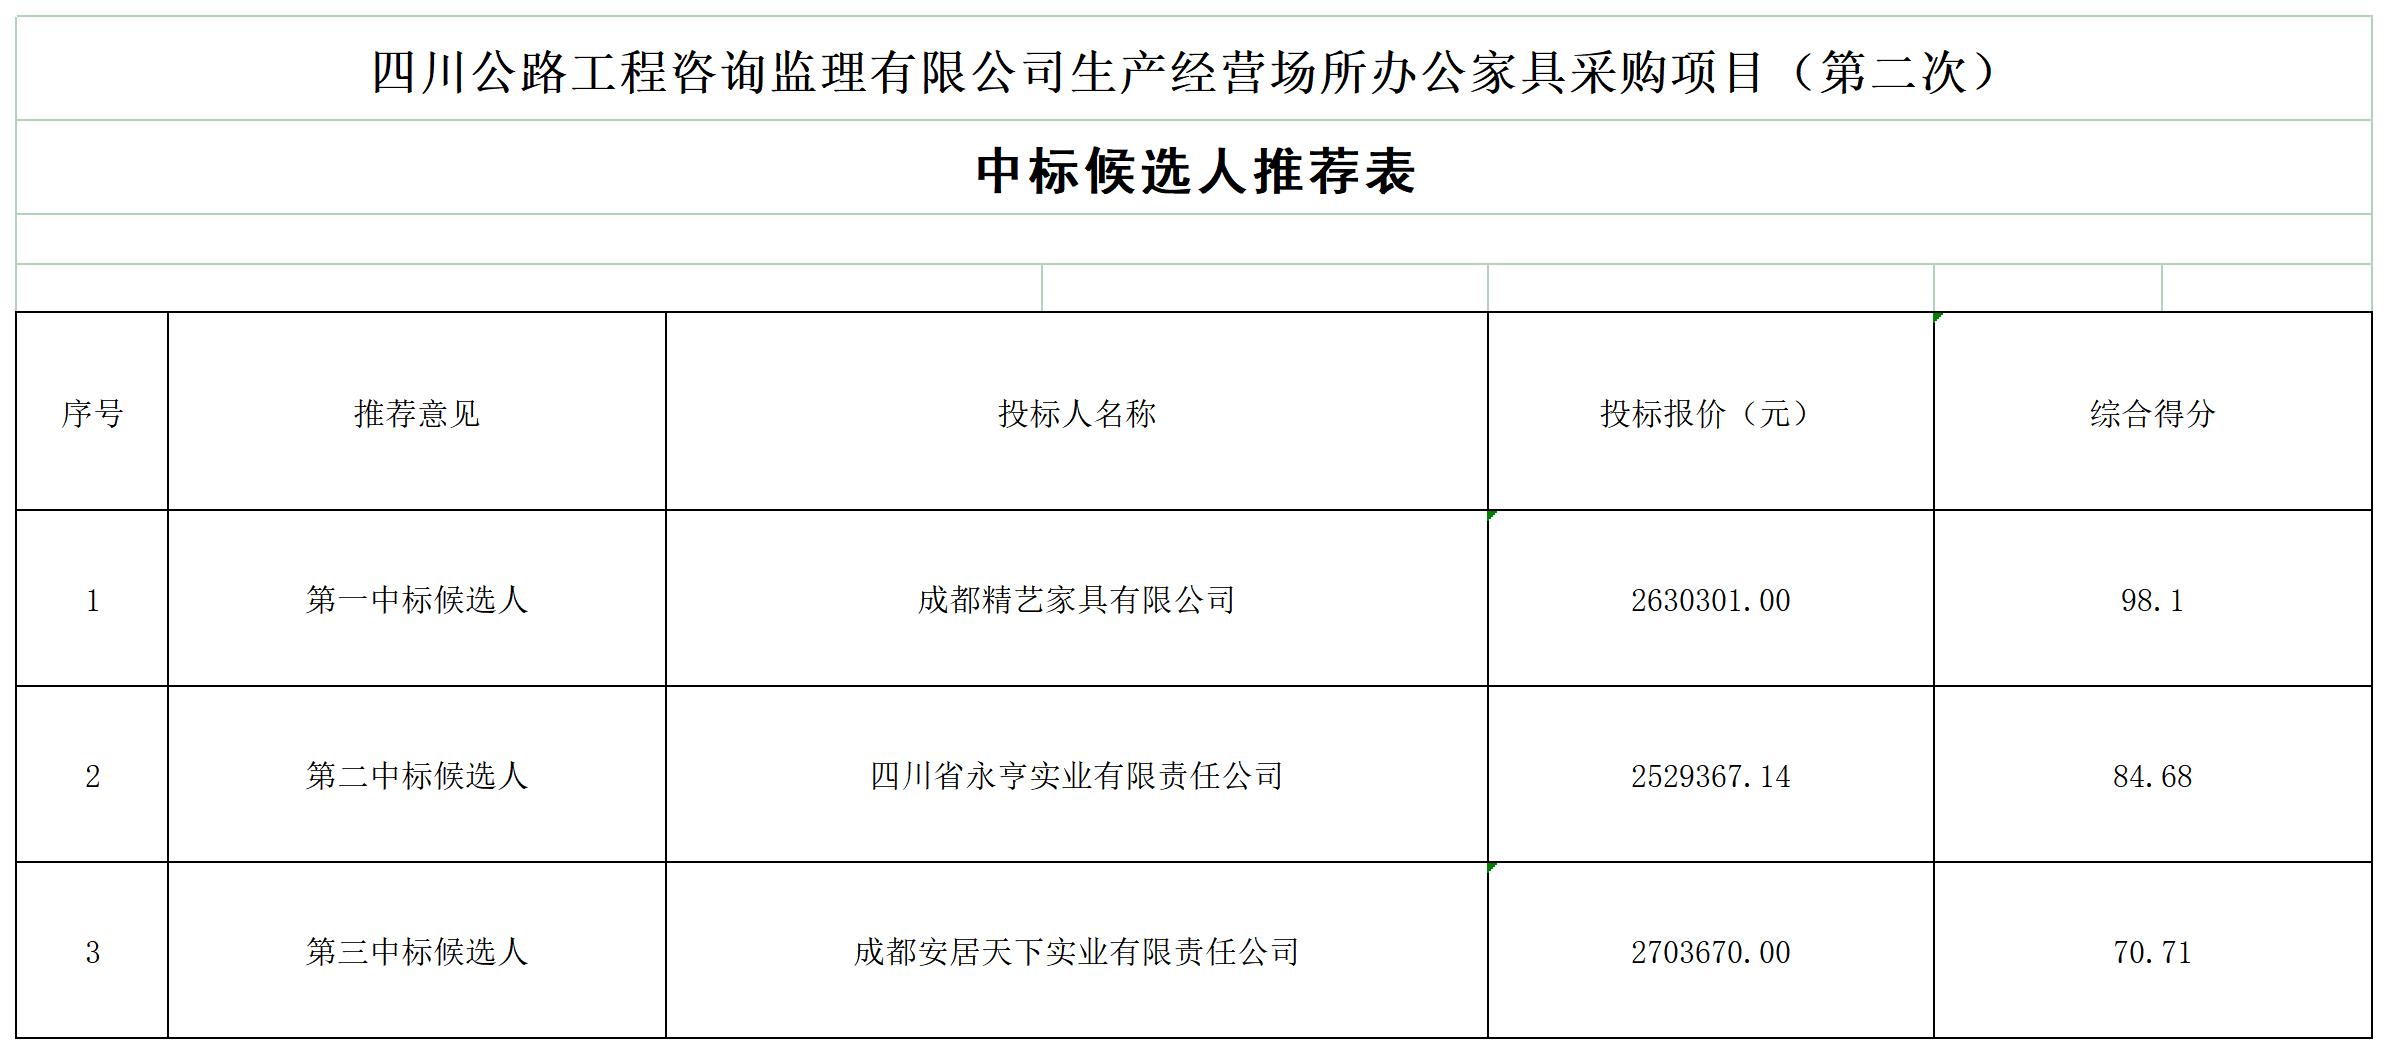 HTH华体会·(中国)官方网站生产经营场所办公家具采购项目（第二次）中标候选人及无效投标文件原因_A1G8.jpg